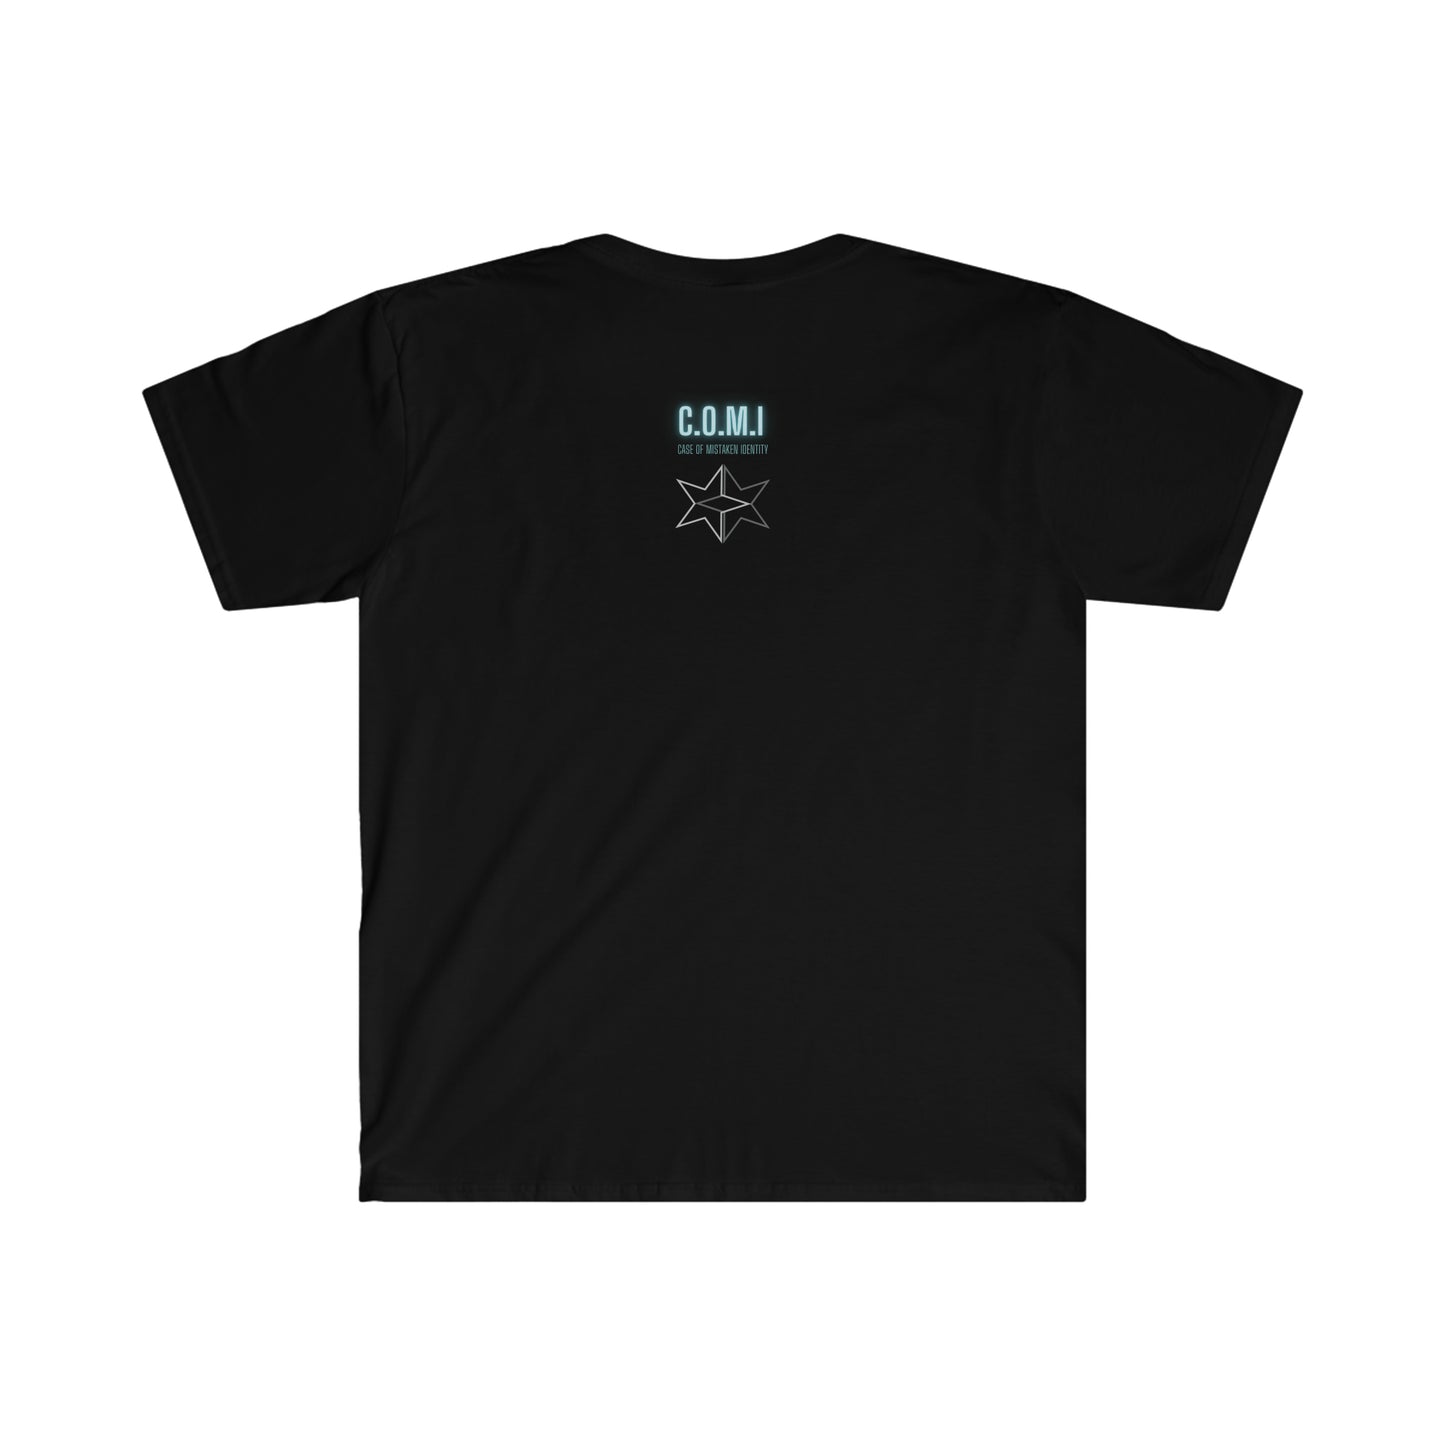 E-Type - Unisex Softstyle T-Shirt